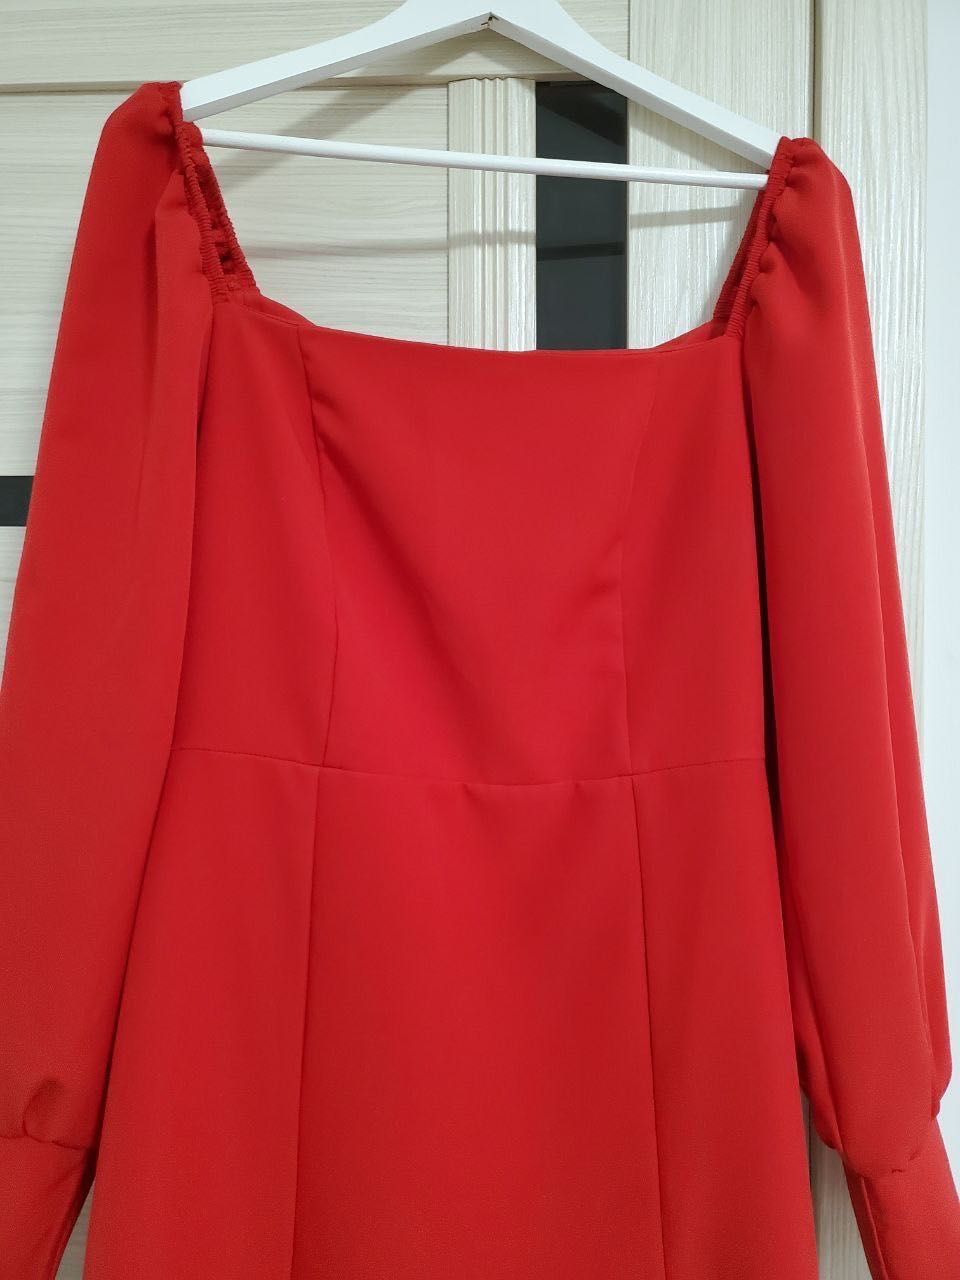 Червоне яскраве плаття з довгим рукавом, в новому стані